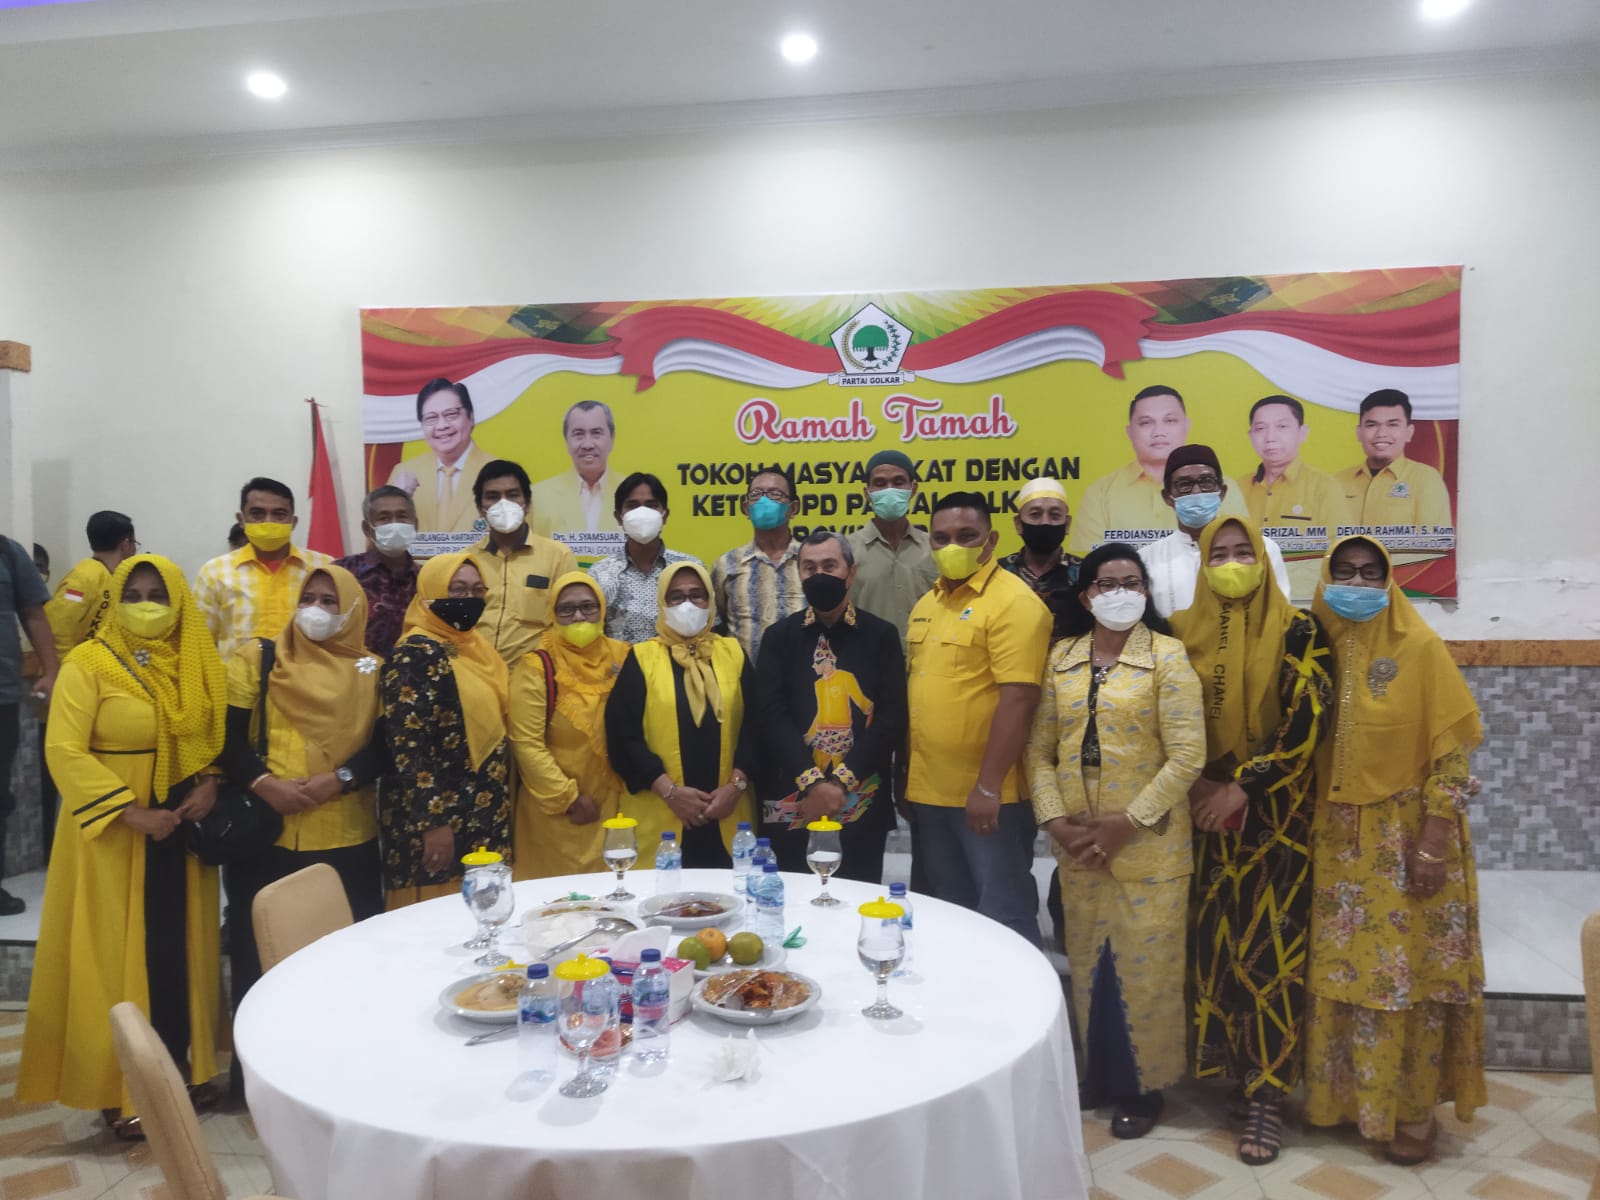 Gubernur Riau Mengadakan Acara Ramah Tamah dengan Tokoh Masyarakat Kota Dumai